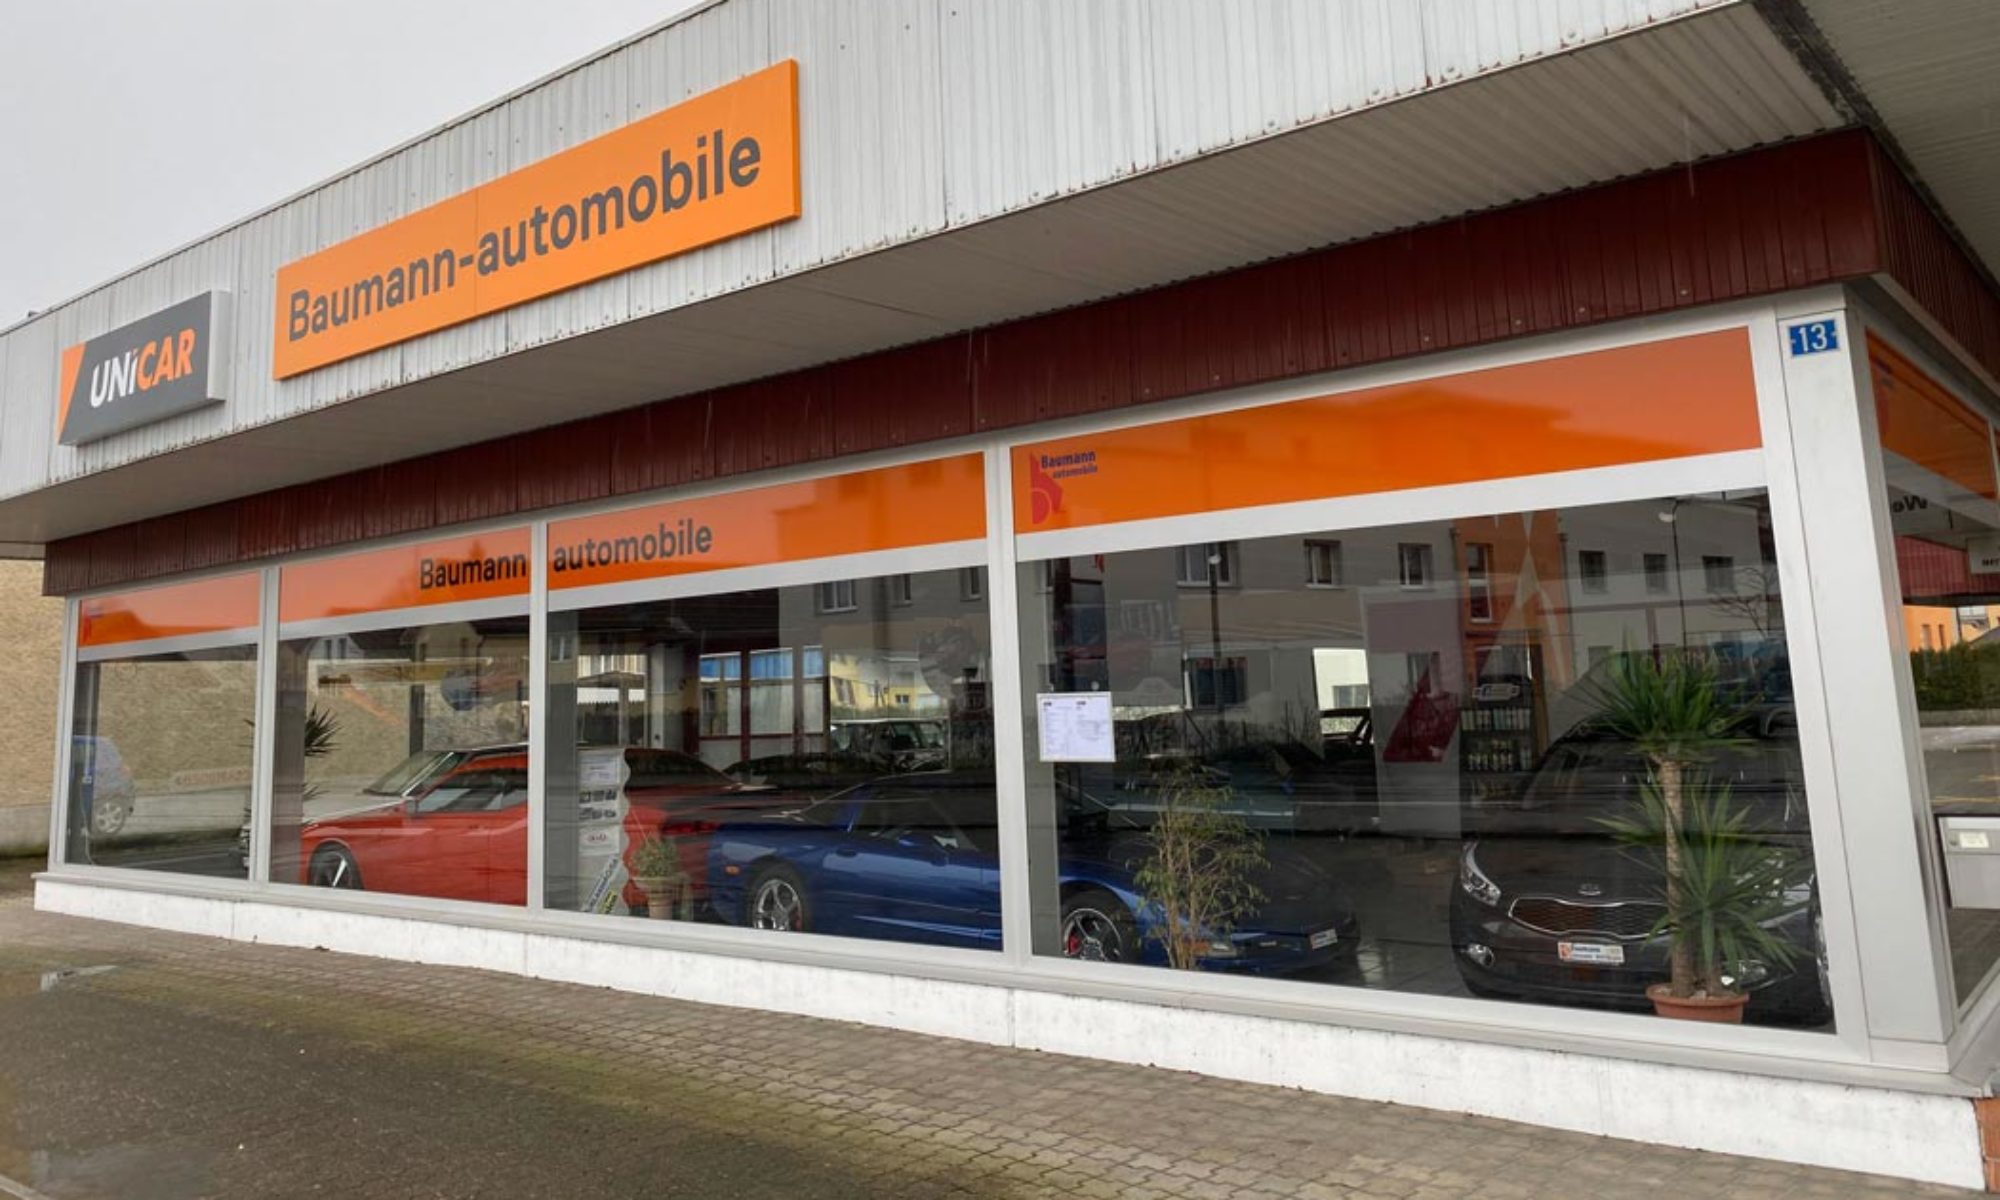 Baumann-automobile, Autogarage in Bürglen repariert alle Automarken